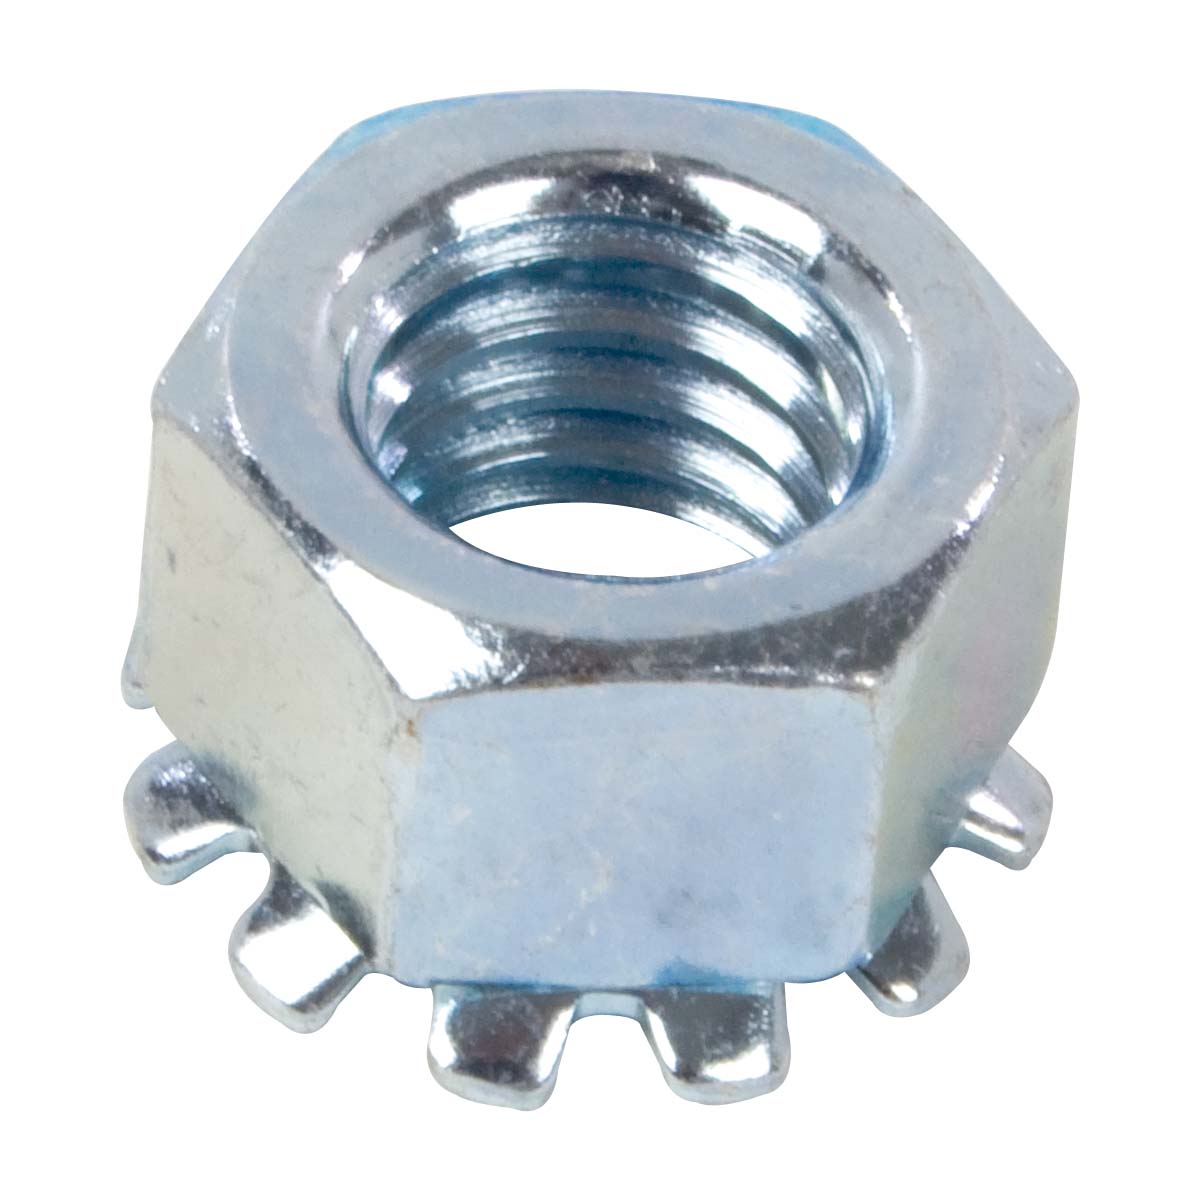 3/8” Flats 10-32 Keps Nut Zinc Plated Steel K-Lock PKG of 100 